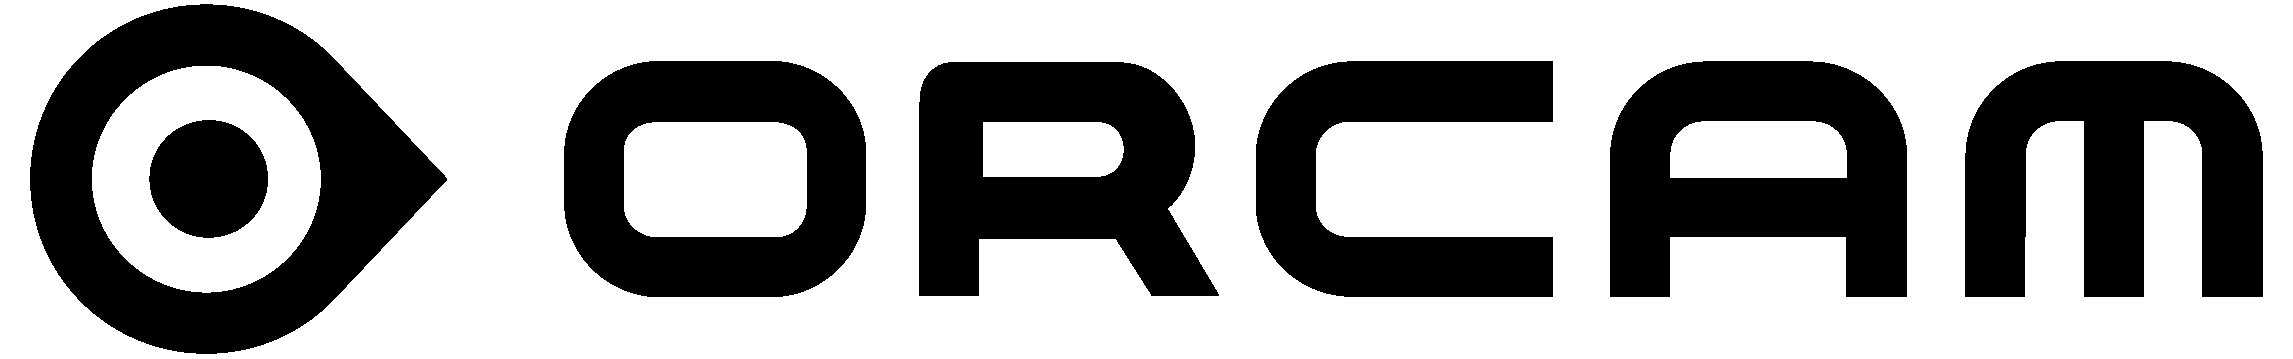 OrCam Logo